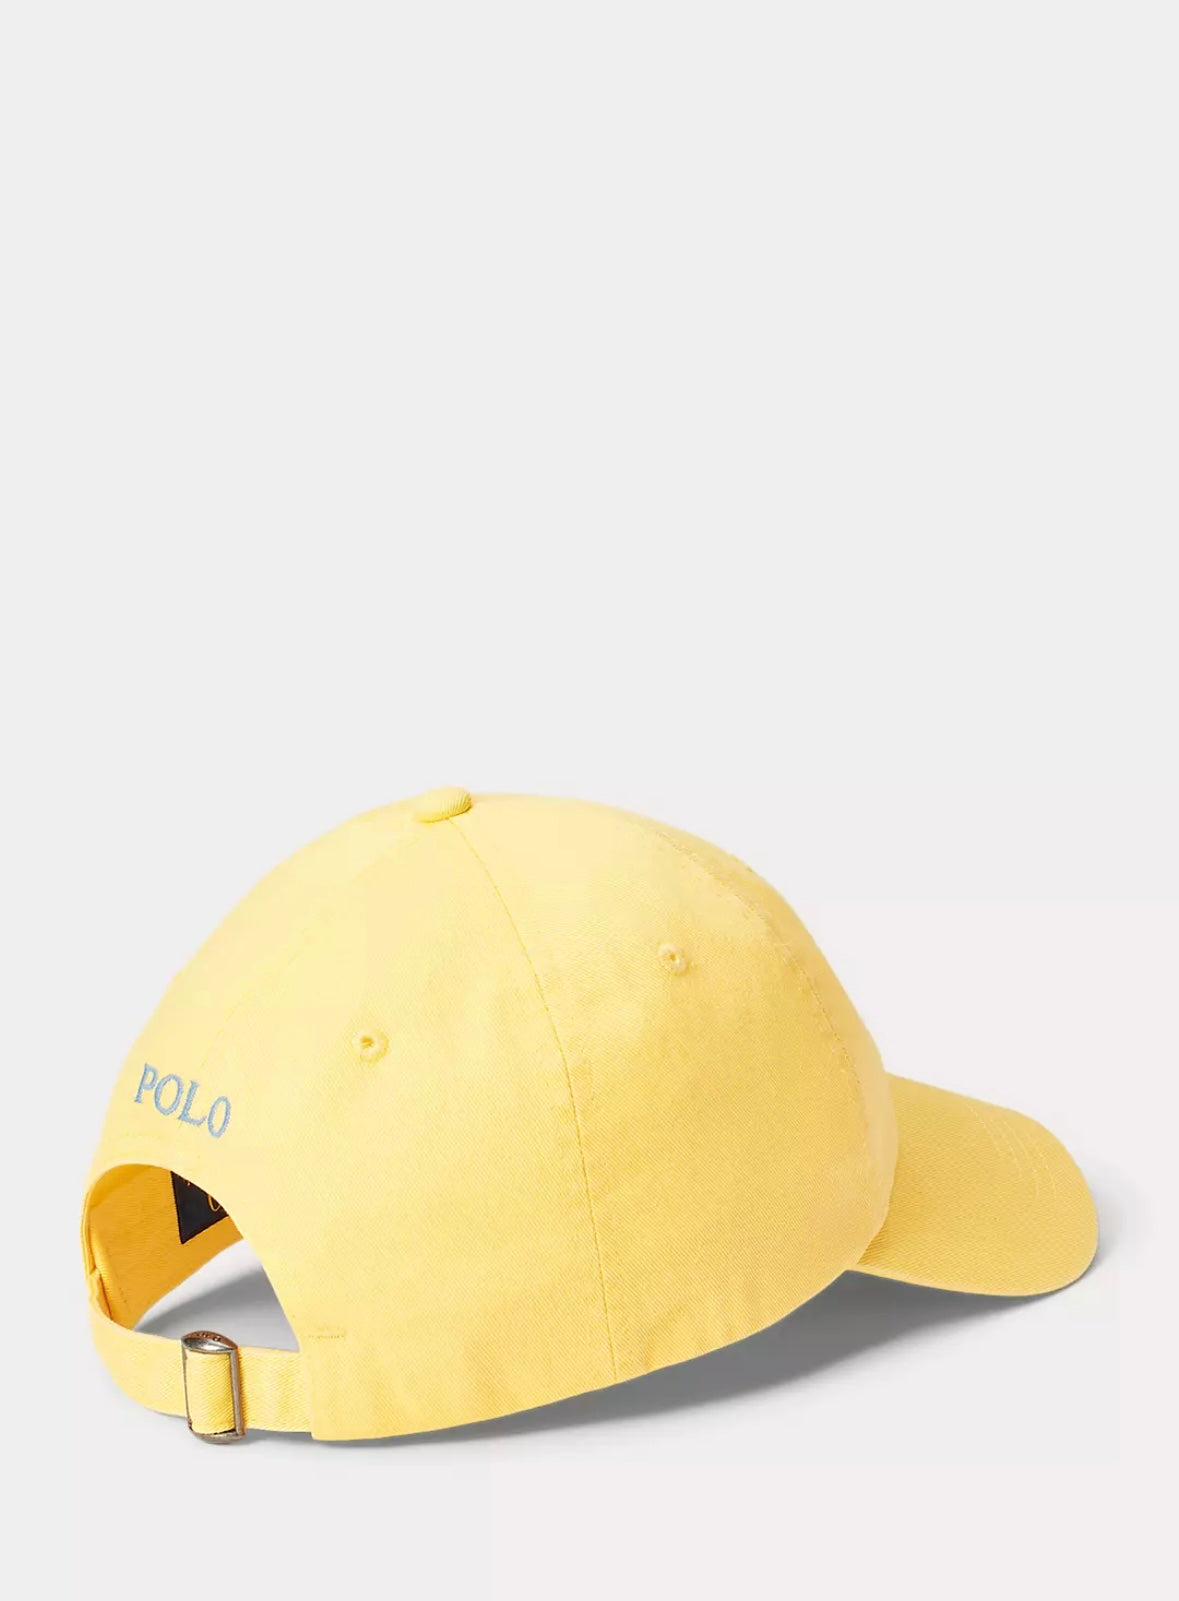 Polo Ralph Lauren caps - Oasis Yellow